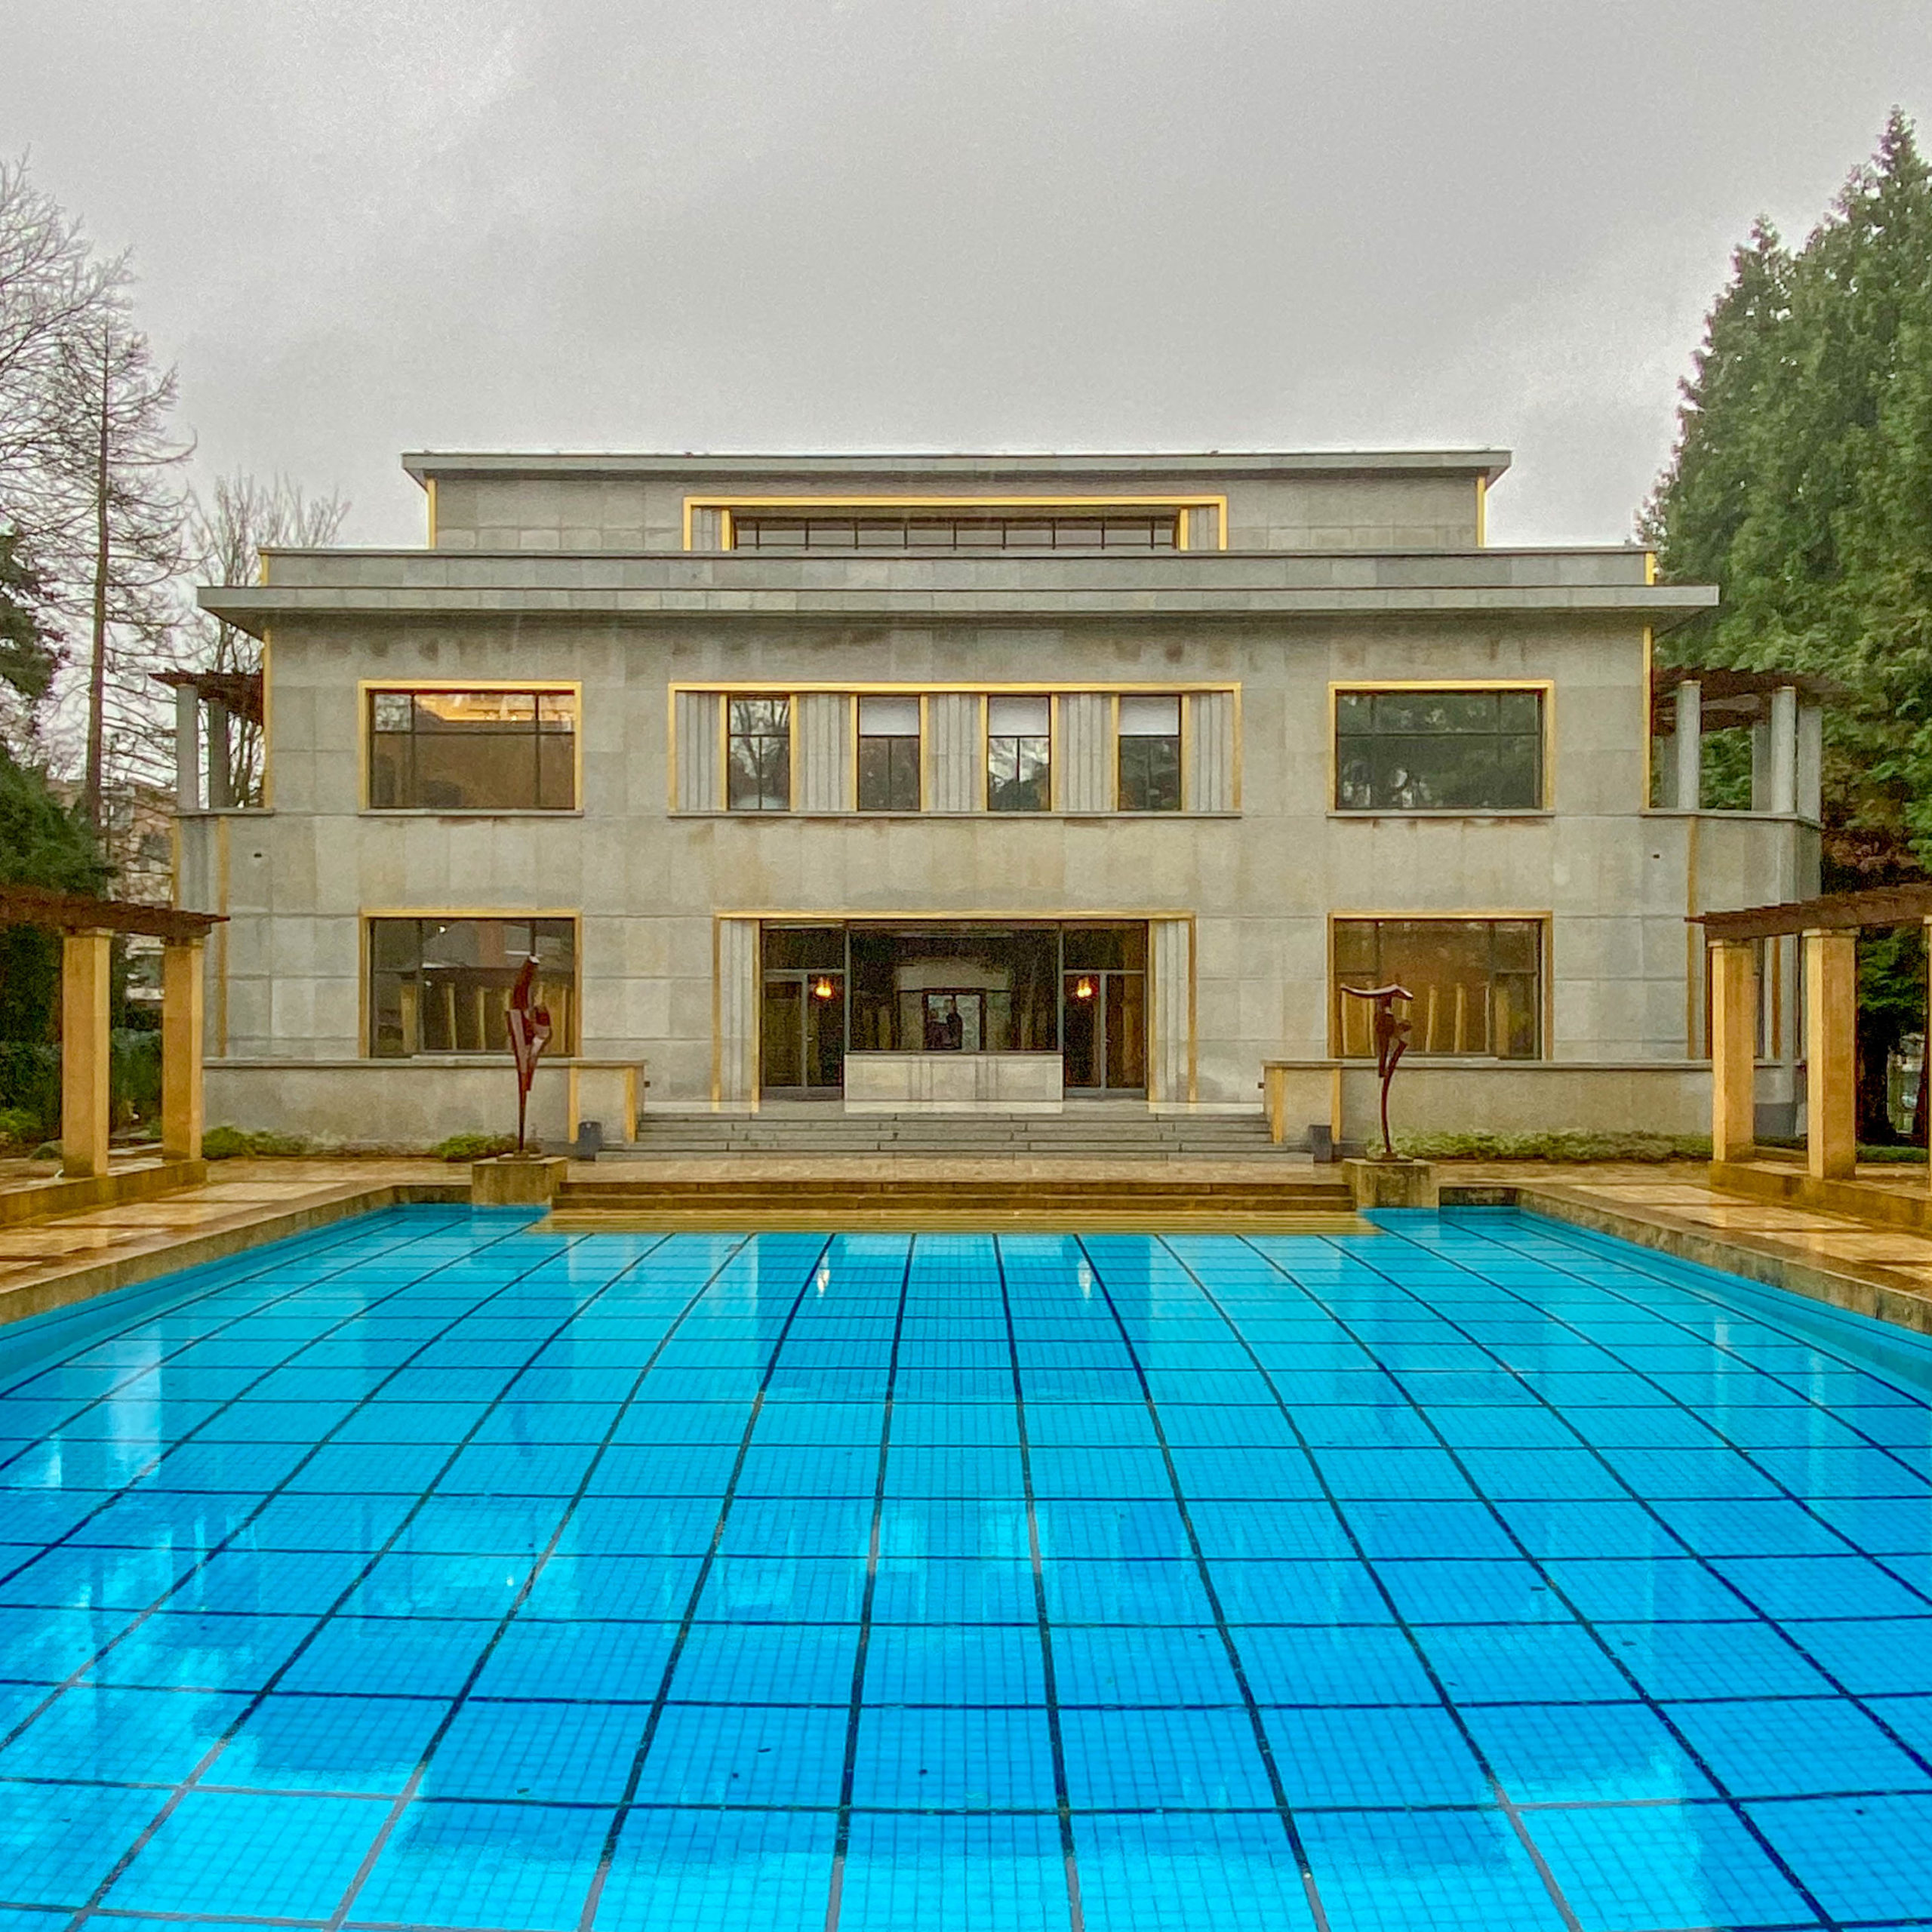 Villa Empain, 1930-1935. Architect: Michel Polak. Photo: Daniela Christmann